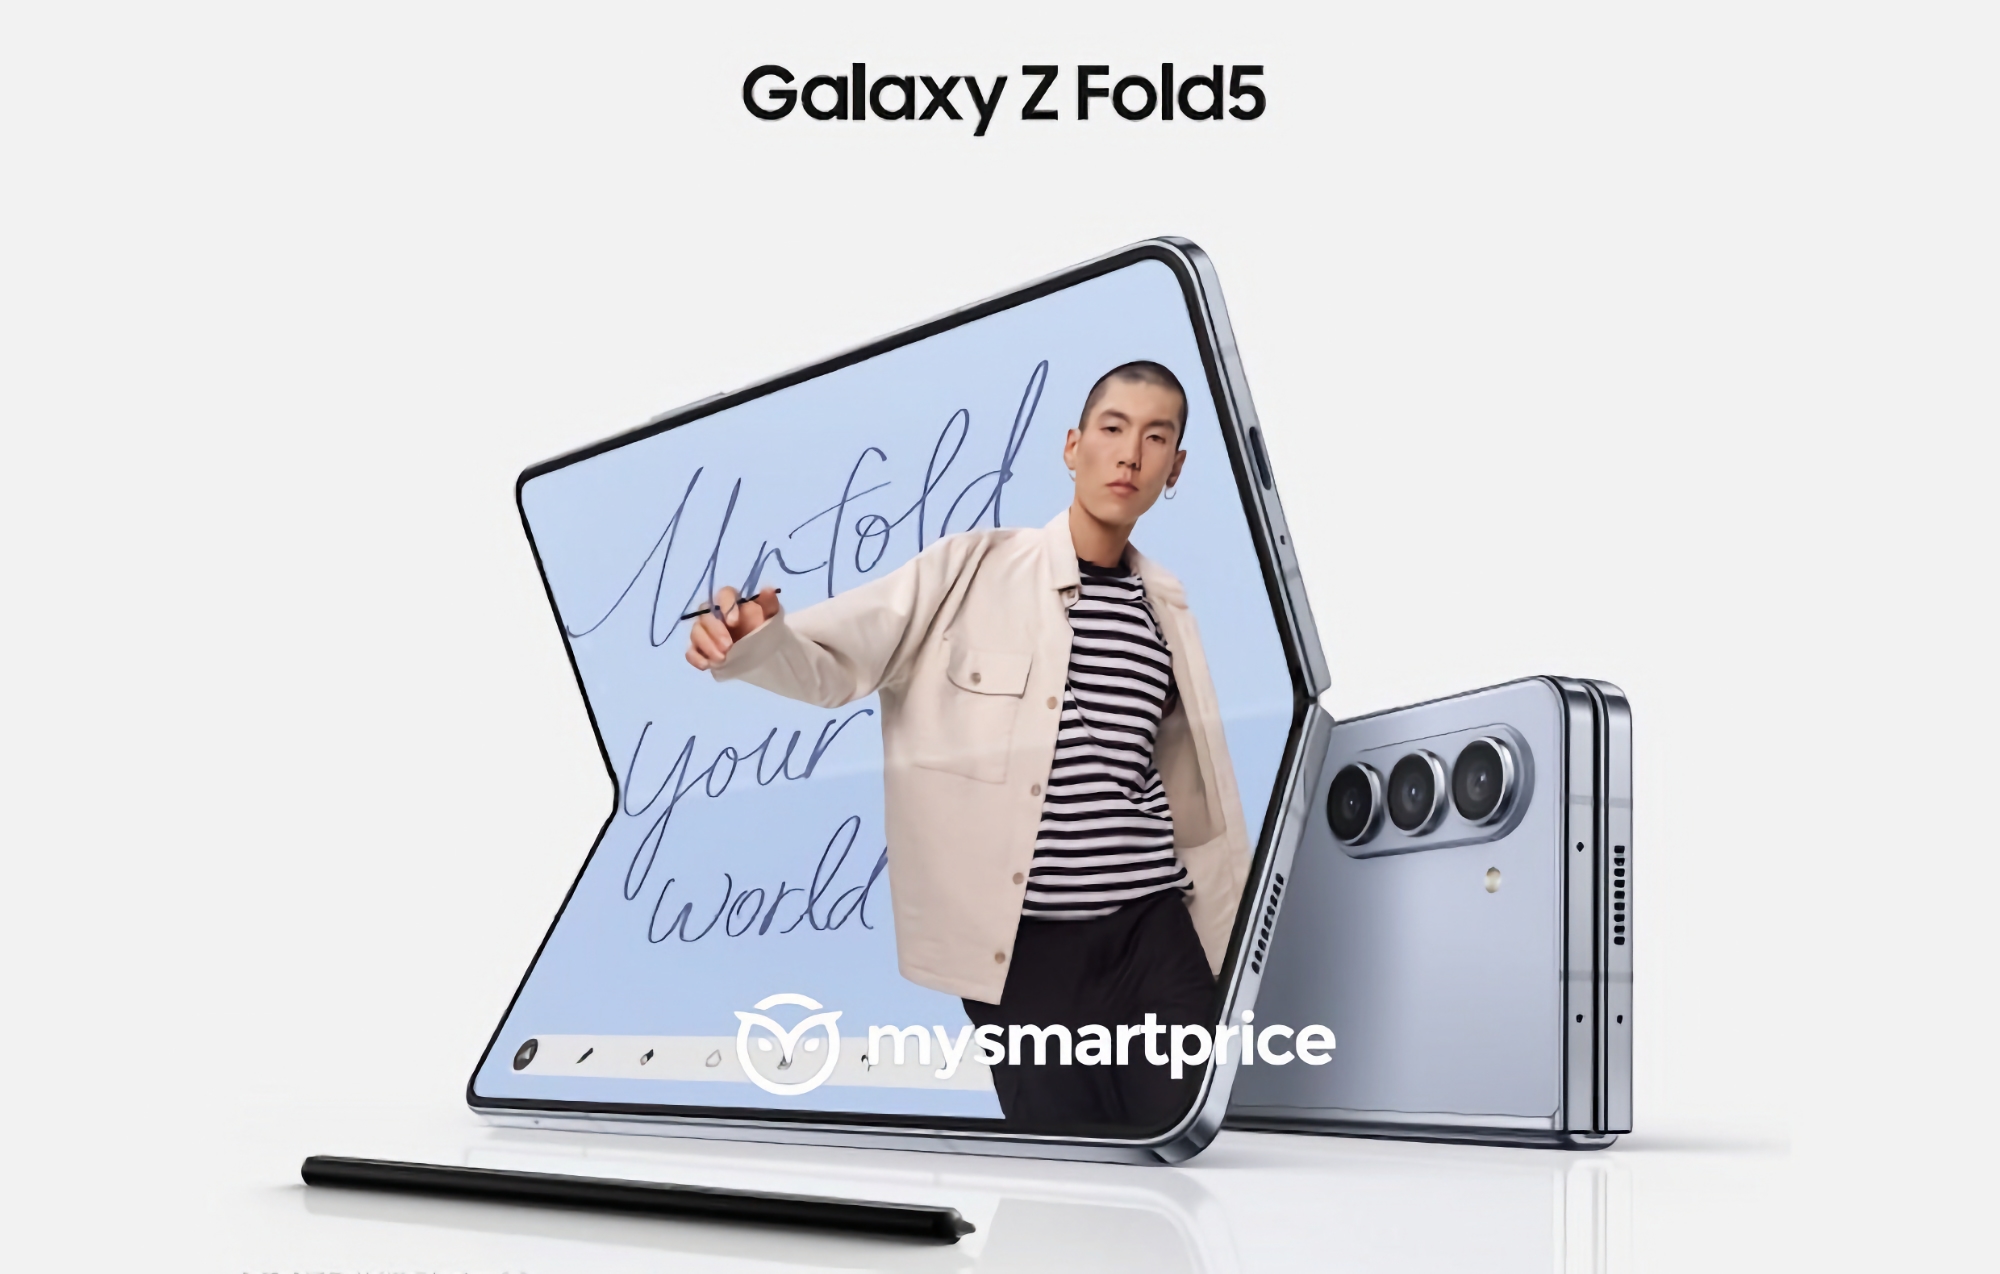 Minimale verandering: de eerste officiële afbeelding van de Samsung Galaxy Fold 5 smartphone is online verschenen